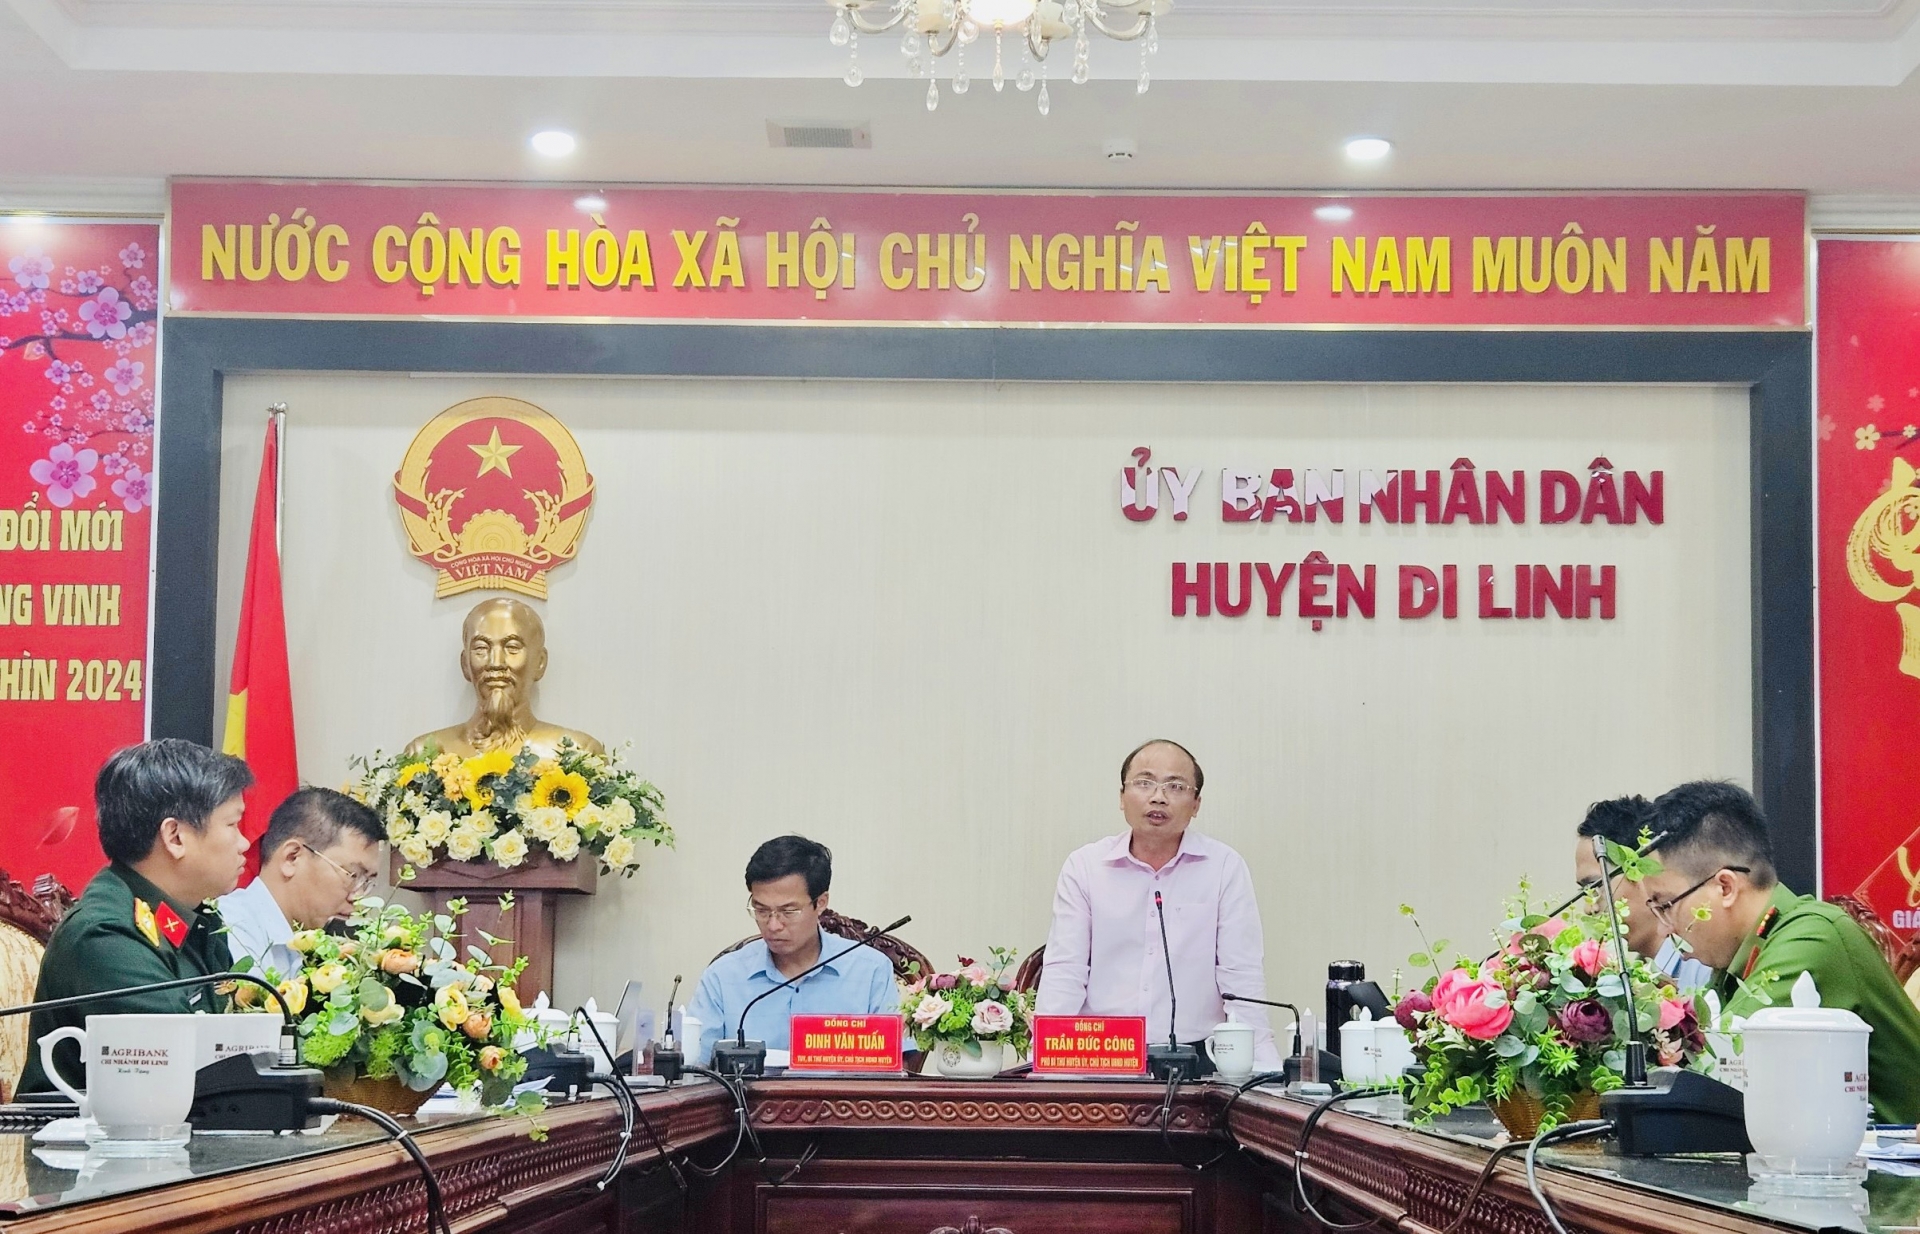 Ông Trần Đức Công - Chủ tịch UBND huyện Di Linh, báo cáo tình hình khó khăn của huyện, đặc biệt là hạn hán (ảnh chụp qua màn hình)